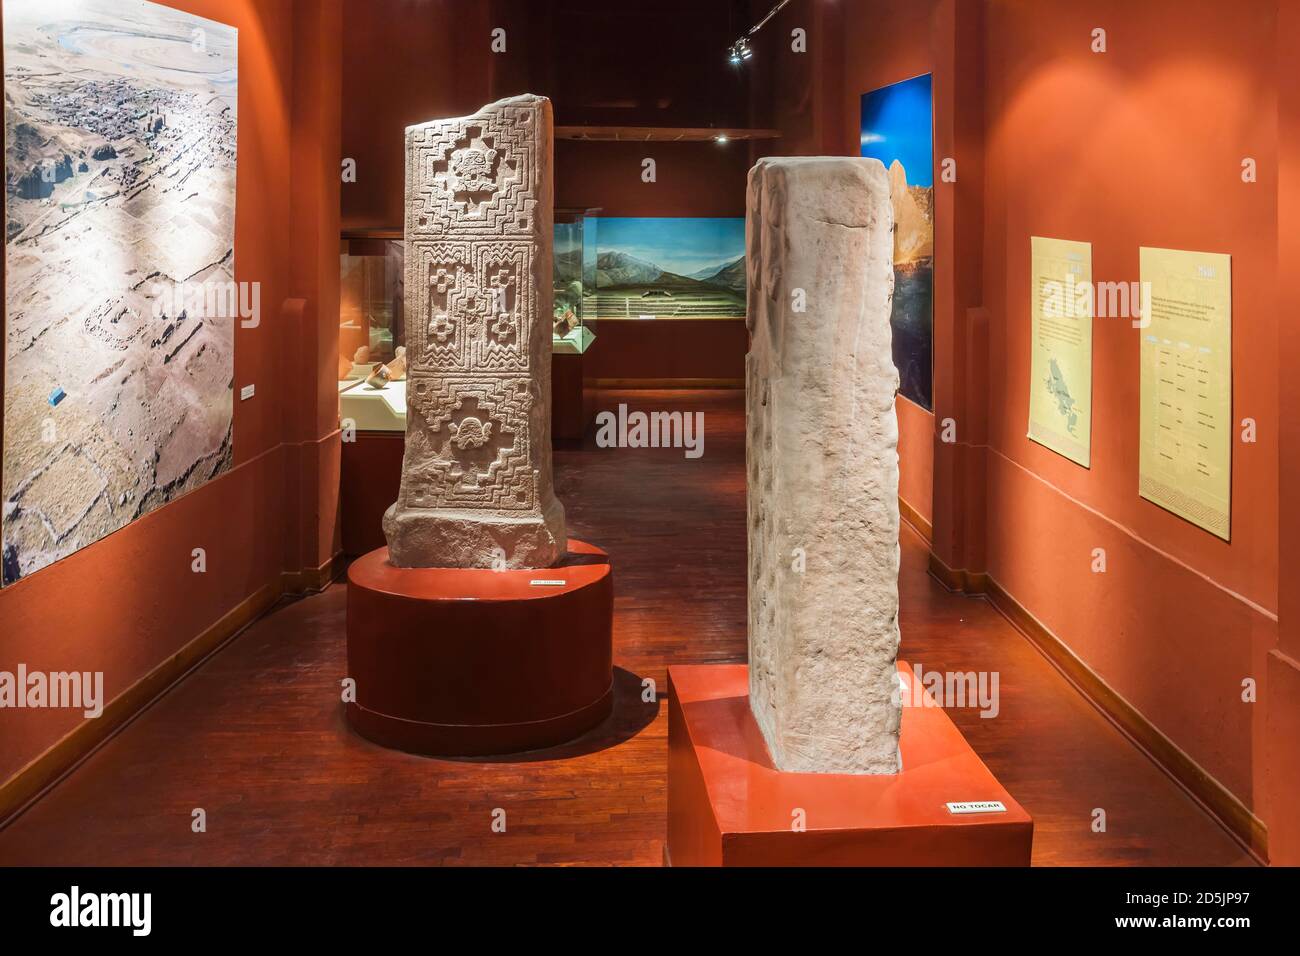 Galerie de collection de la période formative, et stelas, 'Musée national d'archéologie, d'anthropologie et d'histoire du Pérou', Lima, Pérou, Amérique du Sud Banque D'Images